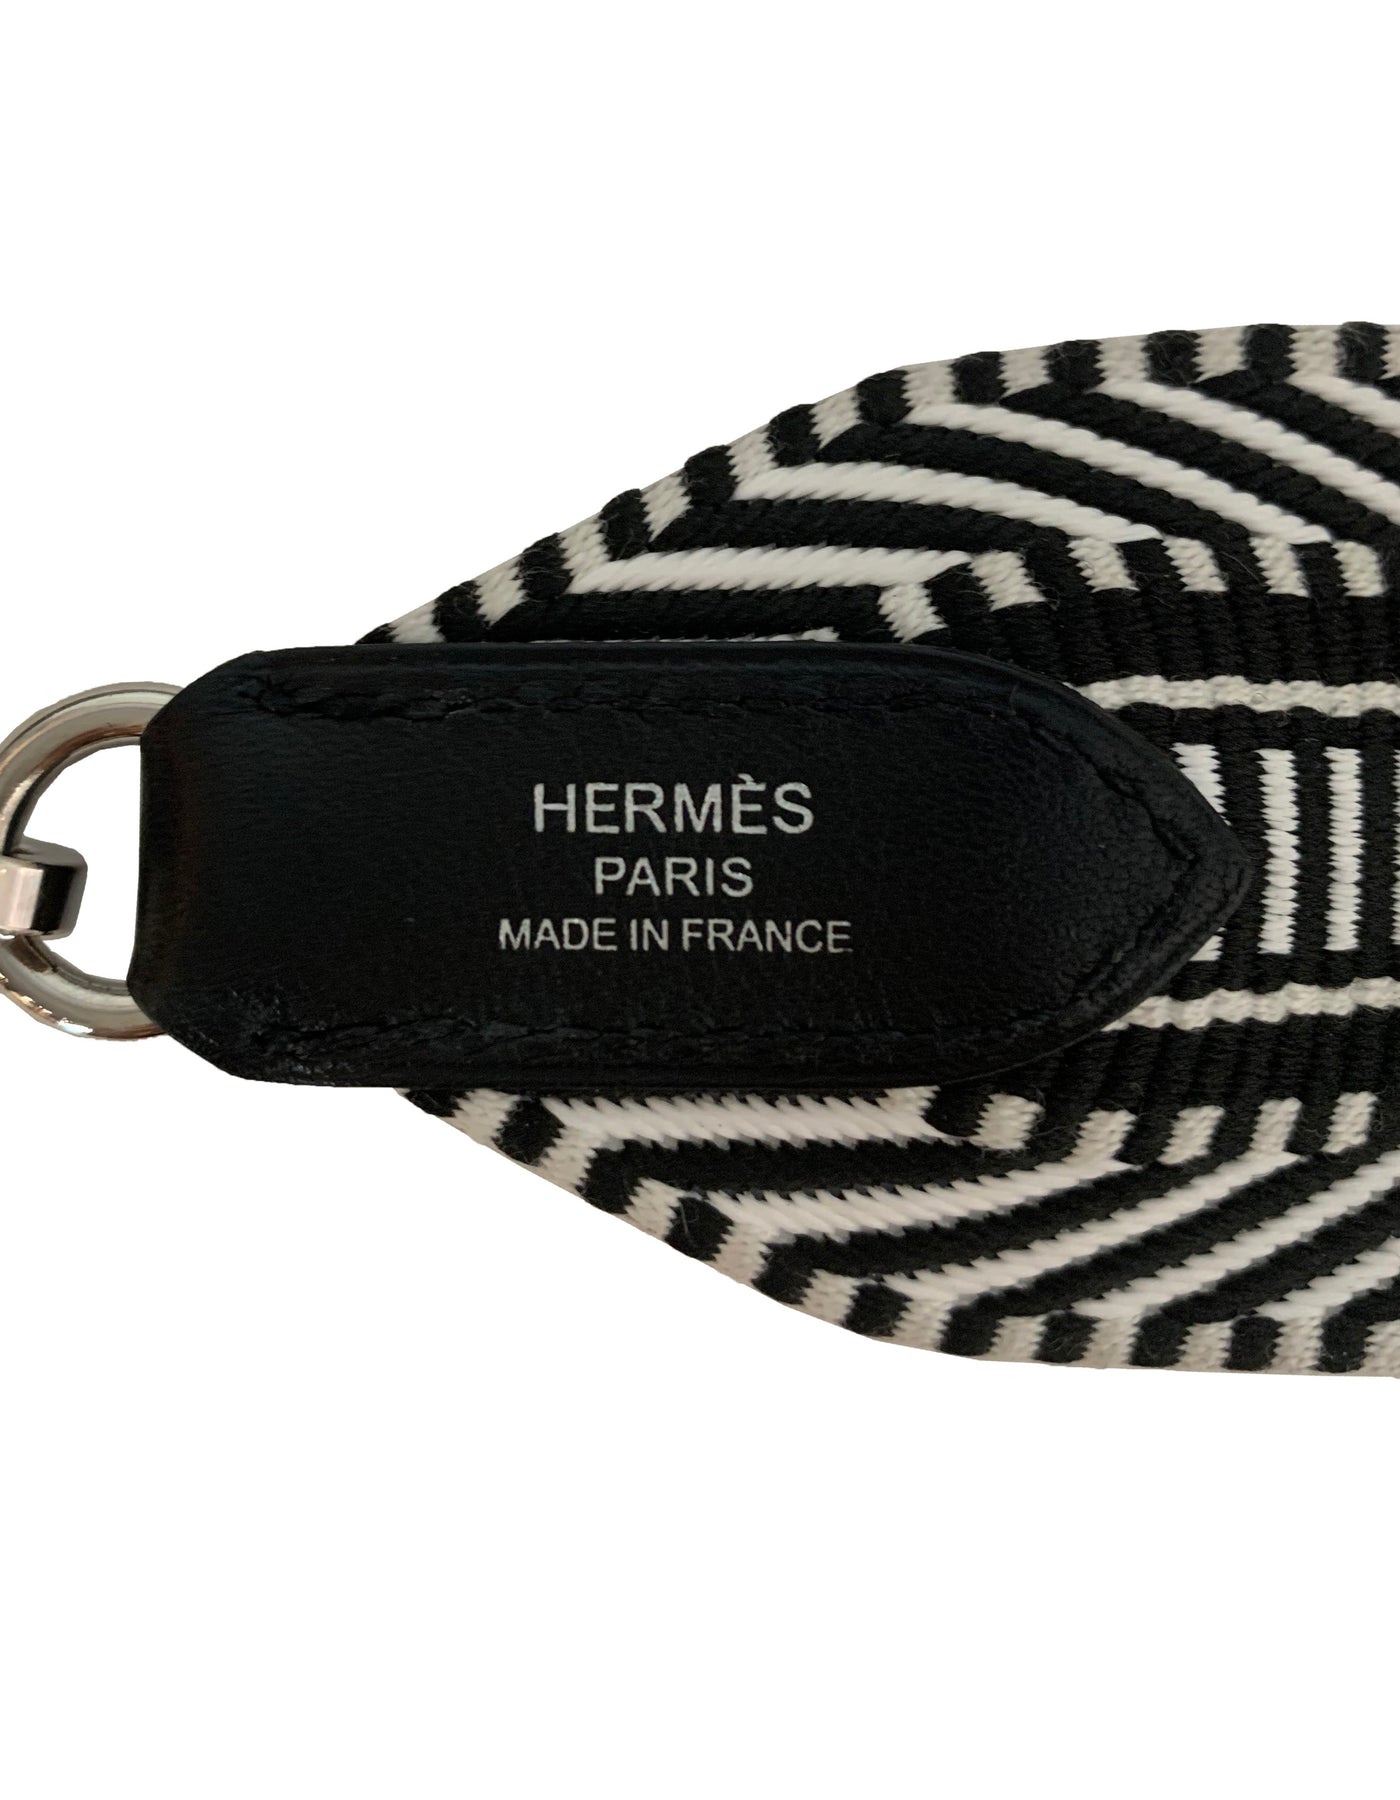 Hermes Sangle Cavale 50 mm Bag Strap White/Black